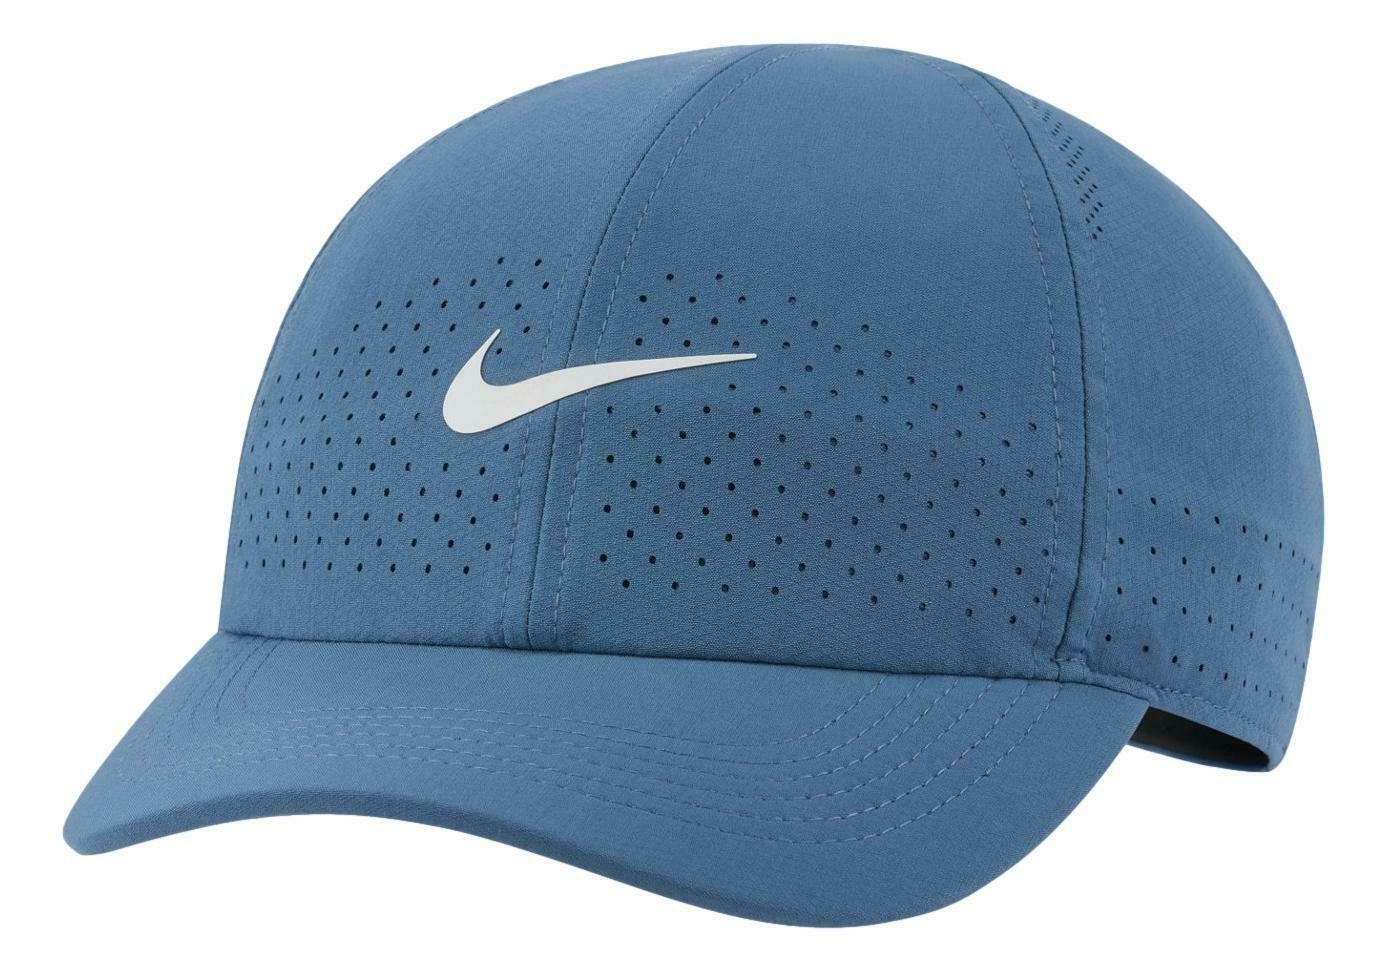 Теннисная кепка Nike Aerobill Dri-Fit Advantage Cap rift blue